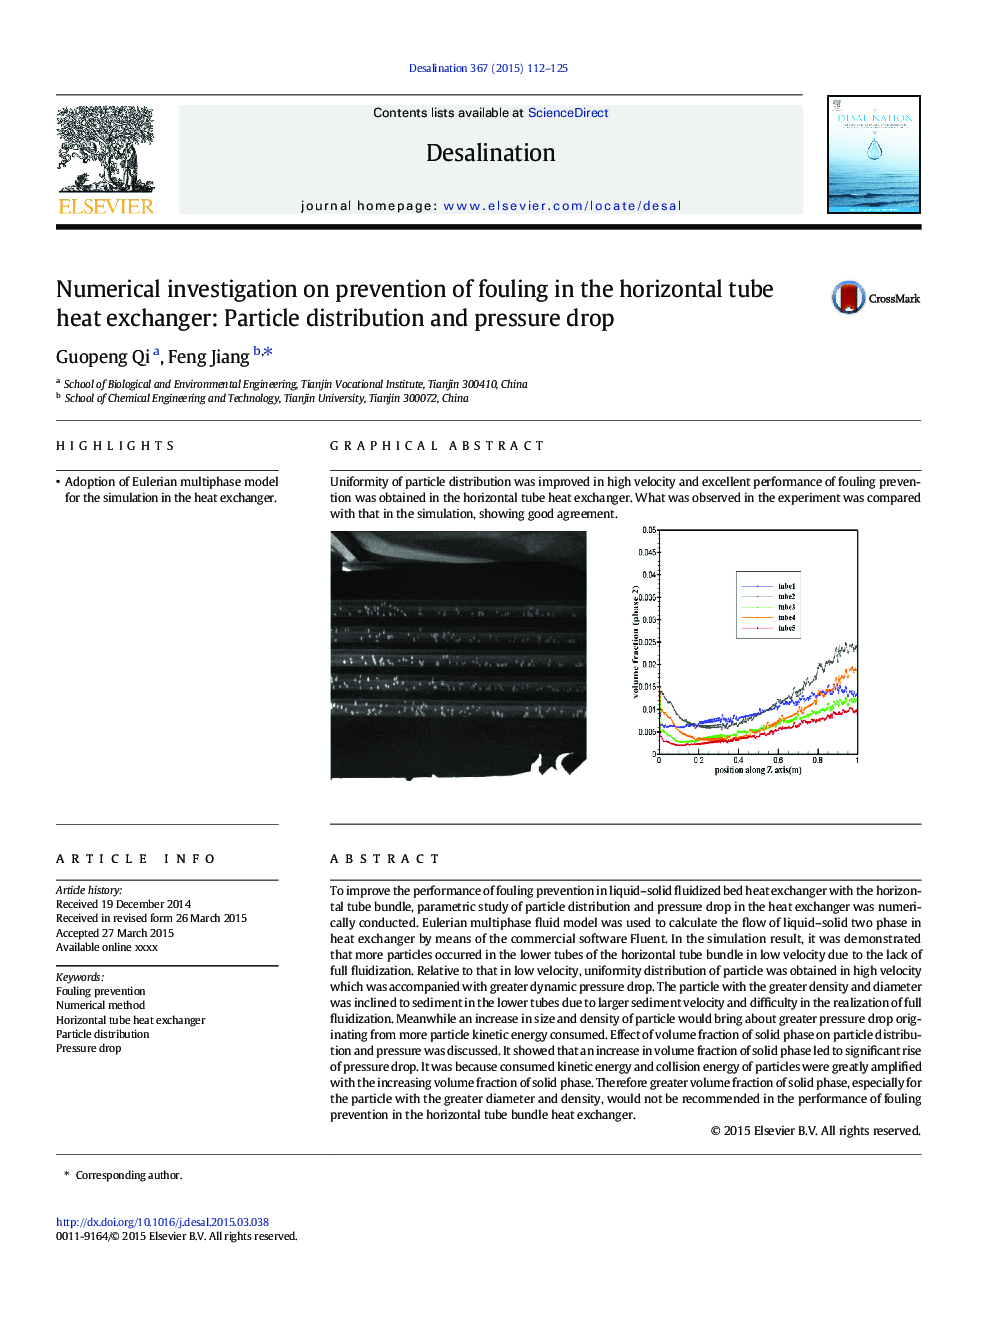 بررسی عددی در پیشگیری از مسمومیت در مبدل حرارتی لوله افقی: توزیع ذرات و افت فشار 